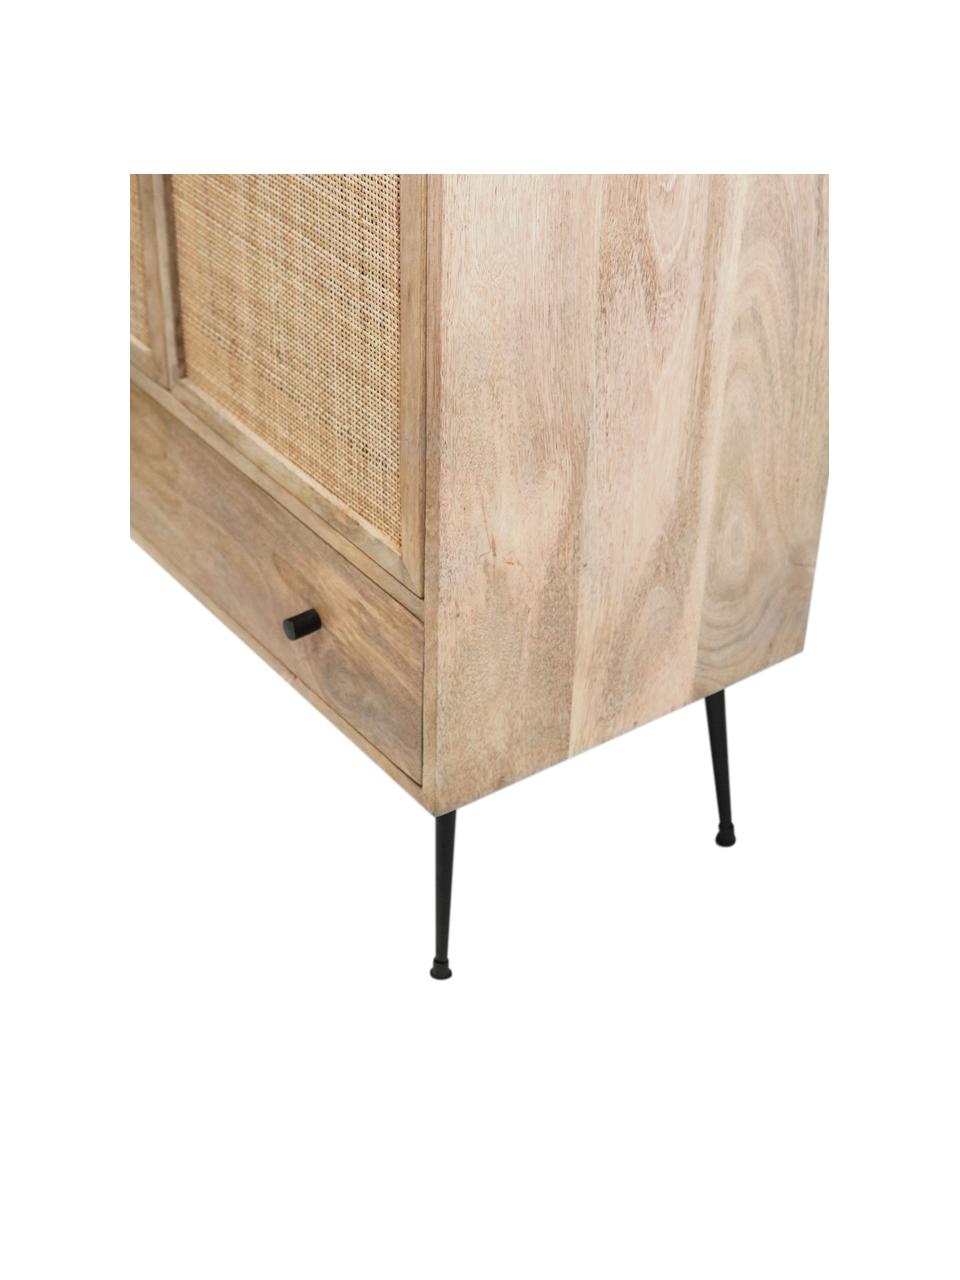 Wysoka komoda z drewna mangowego z plecionym frontem Larry, Korpus: drewno mangowe, Nogi: metal lakierowany, Brązowy, czarny, S 80 x W 137 cm